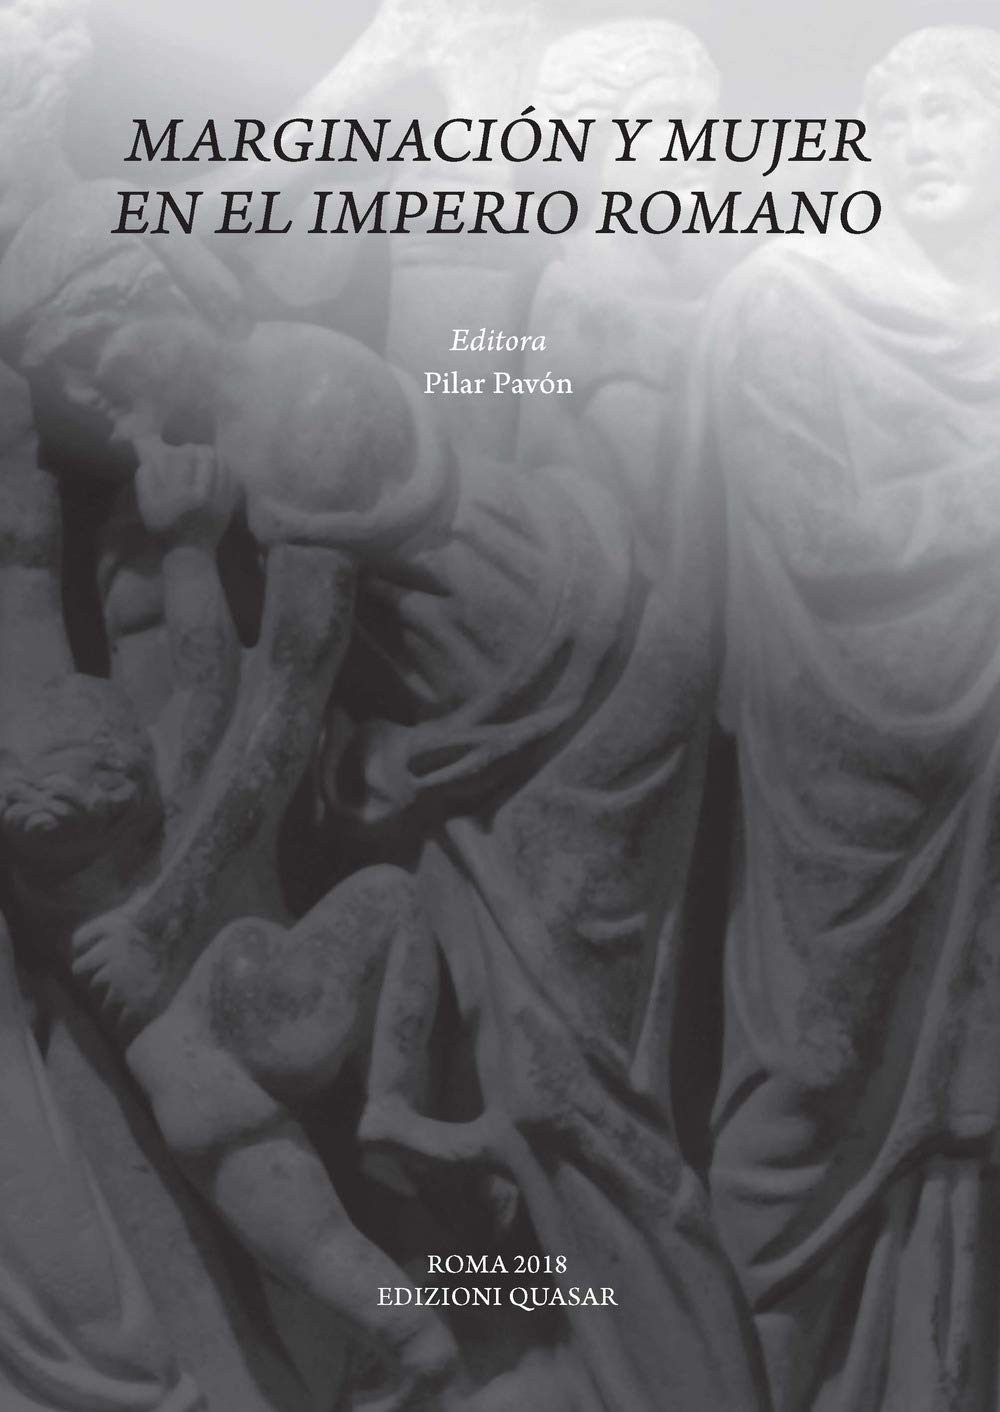 Imagen de portada del libro Marginación y mujer en el imperio romano